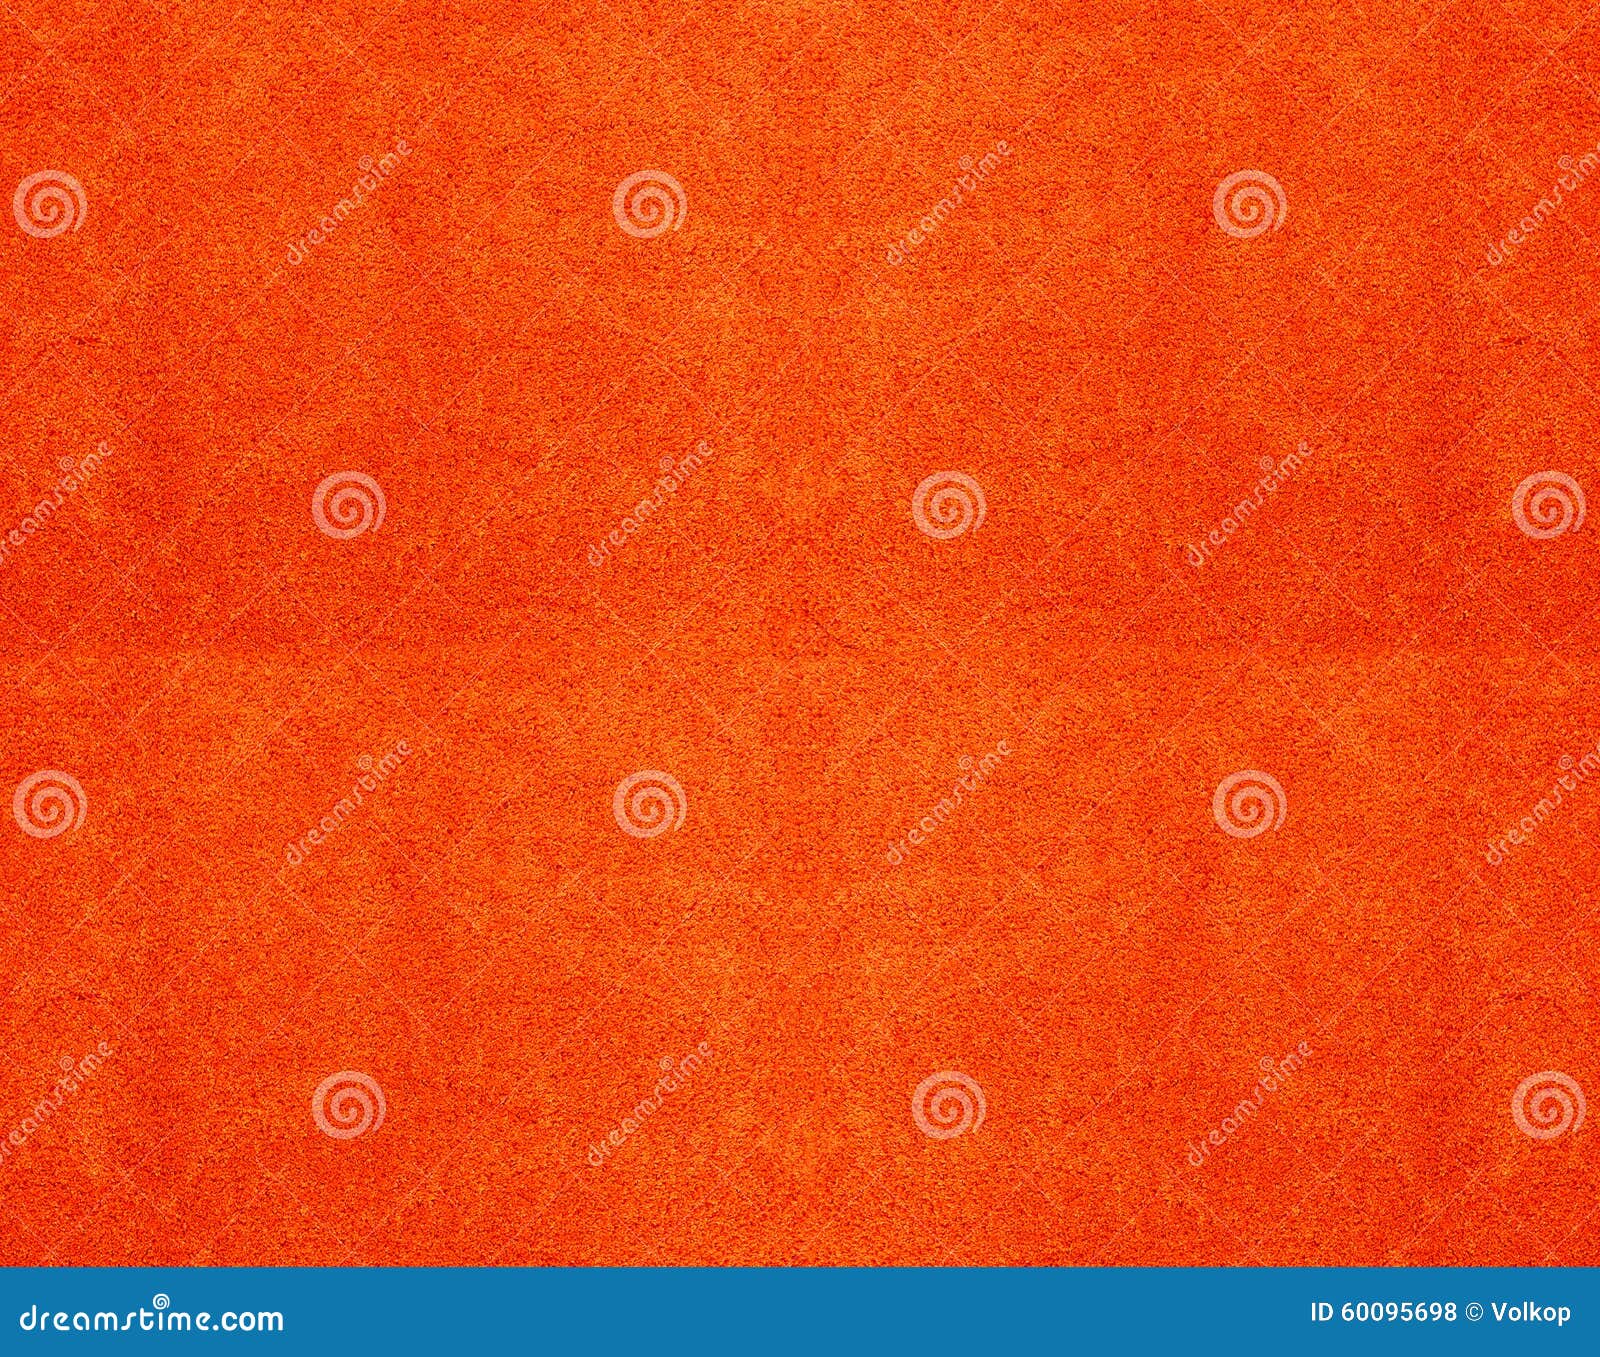 texture of a orange cotton towel